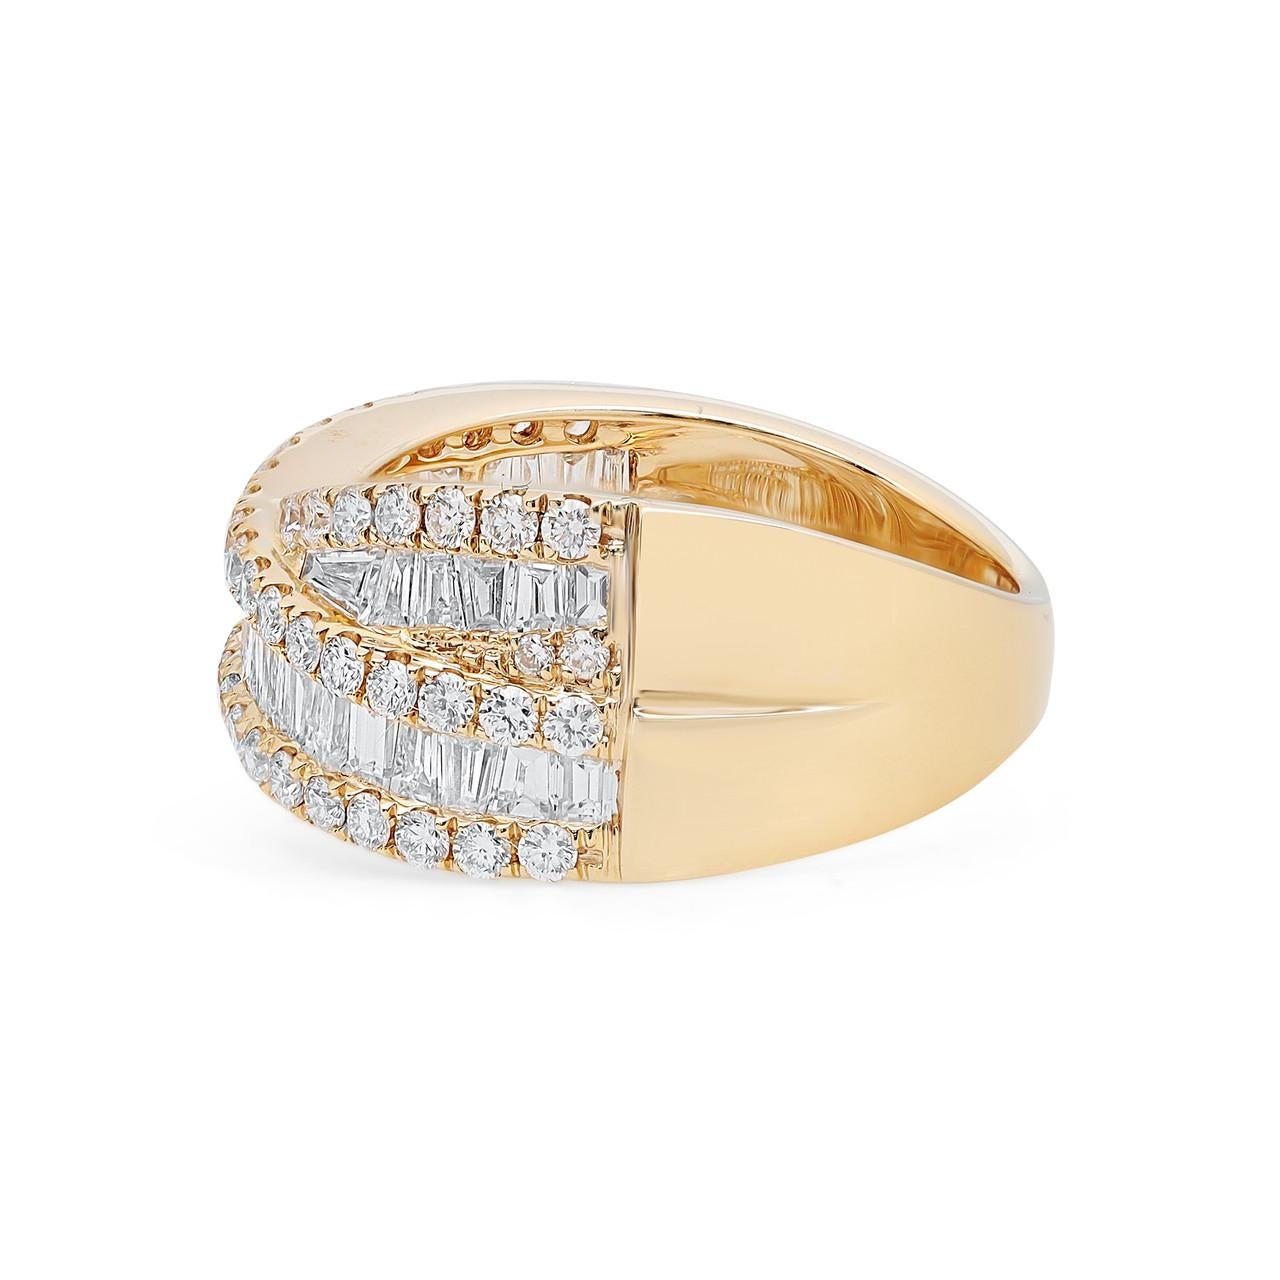 Erhöhen Sie Ihren Stil mit der schillernden Eleganz des 2,00 Karat runden und Baguette-Diamanten Crossover Fashion Ring in 18K Gelbgold. Dieser prächtige Ring ist perfekt für jede Gelegenheit und zeugt von Ihrer Liebe und Individualität. Er wurde